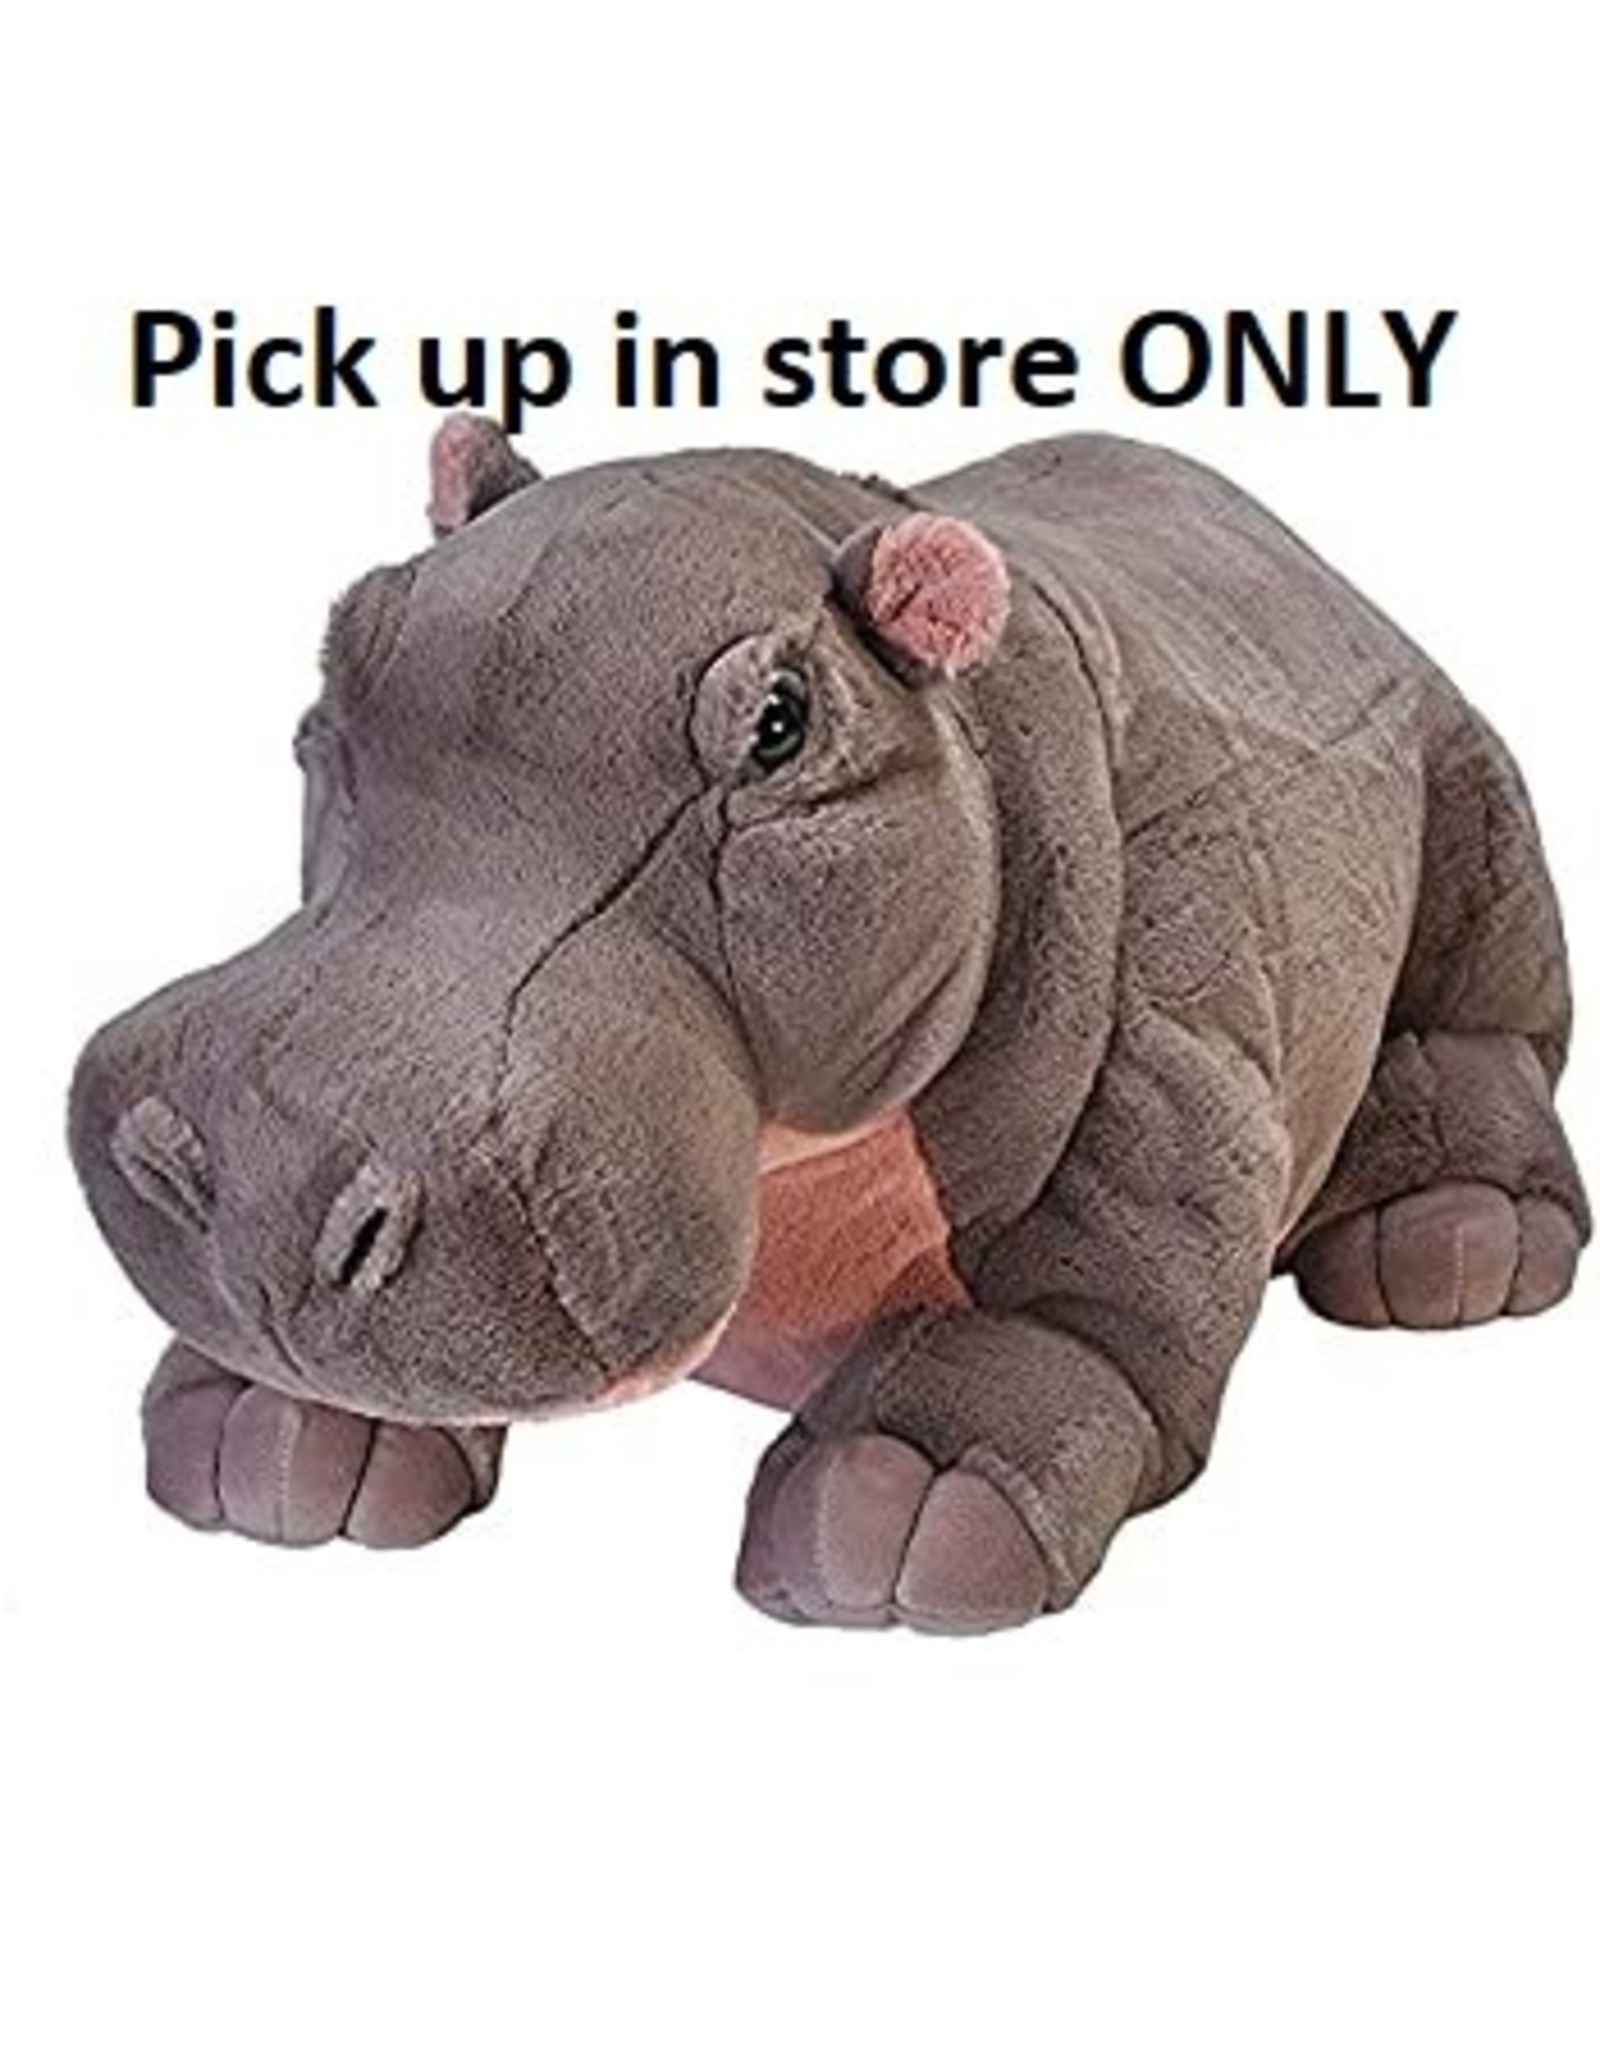 28" CK Jumbo Hippo